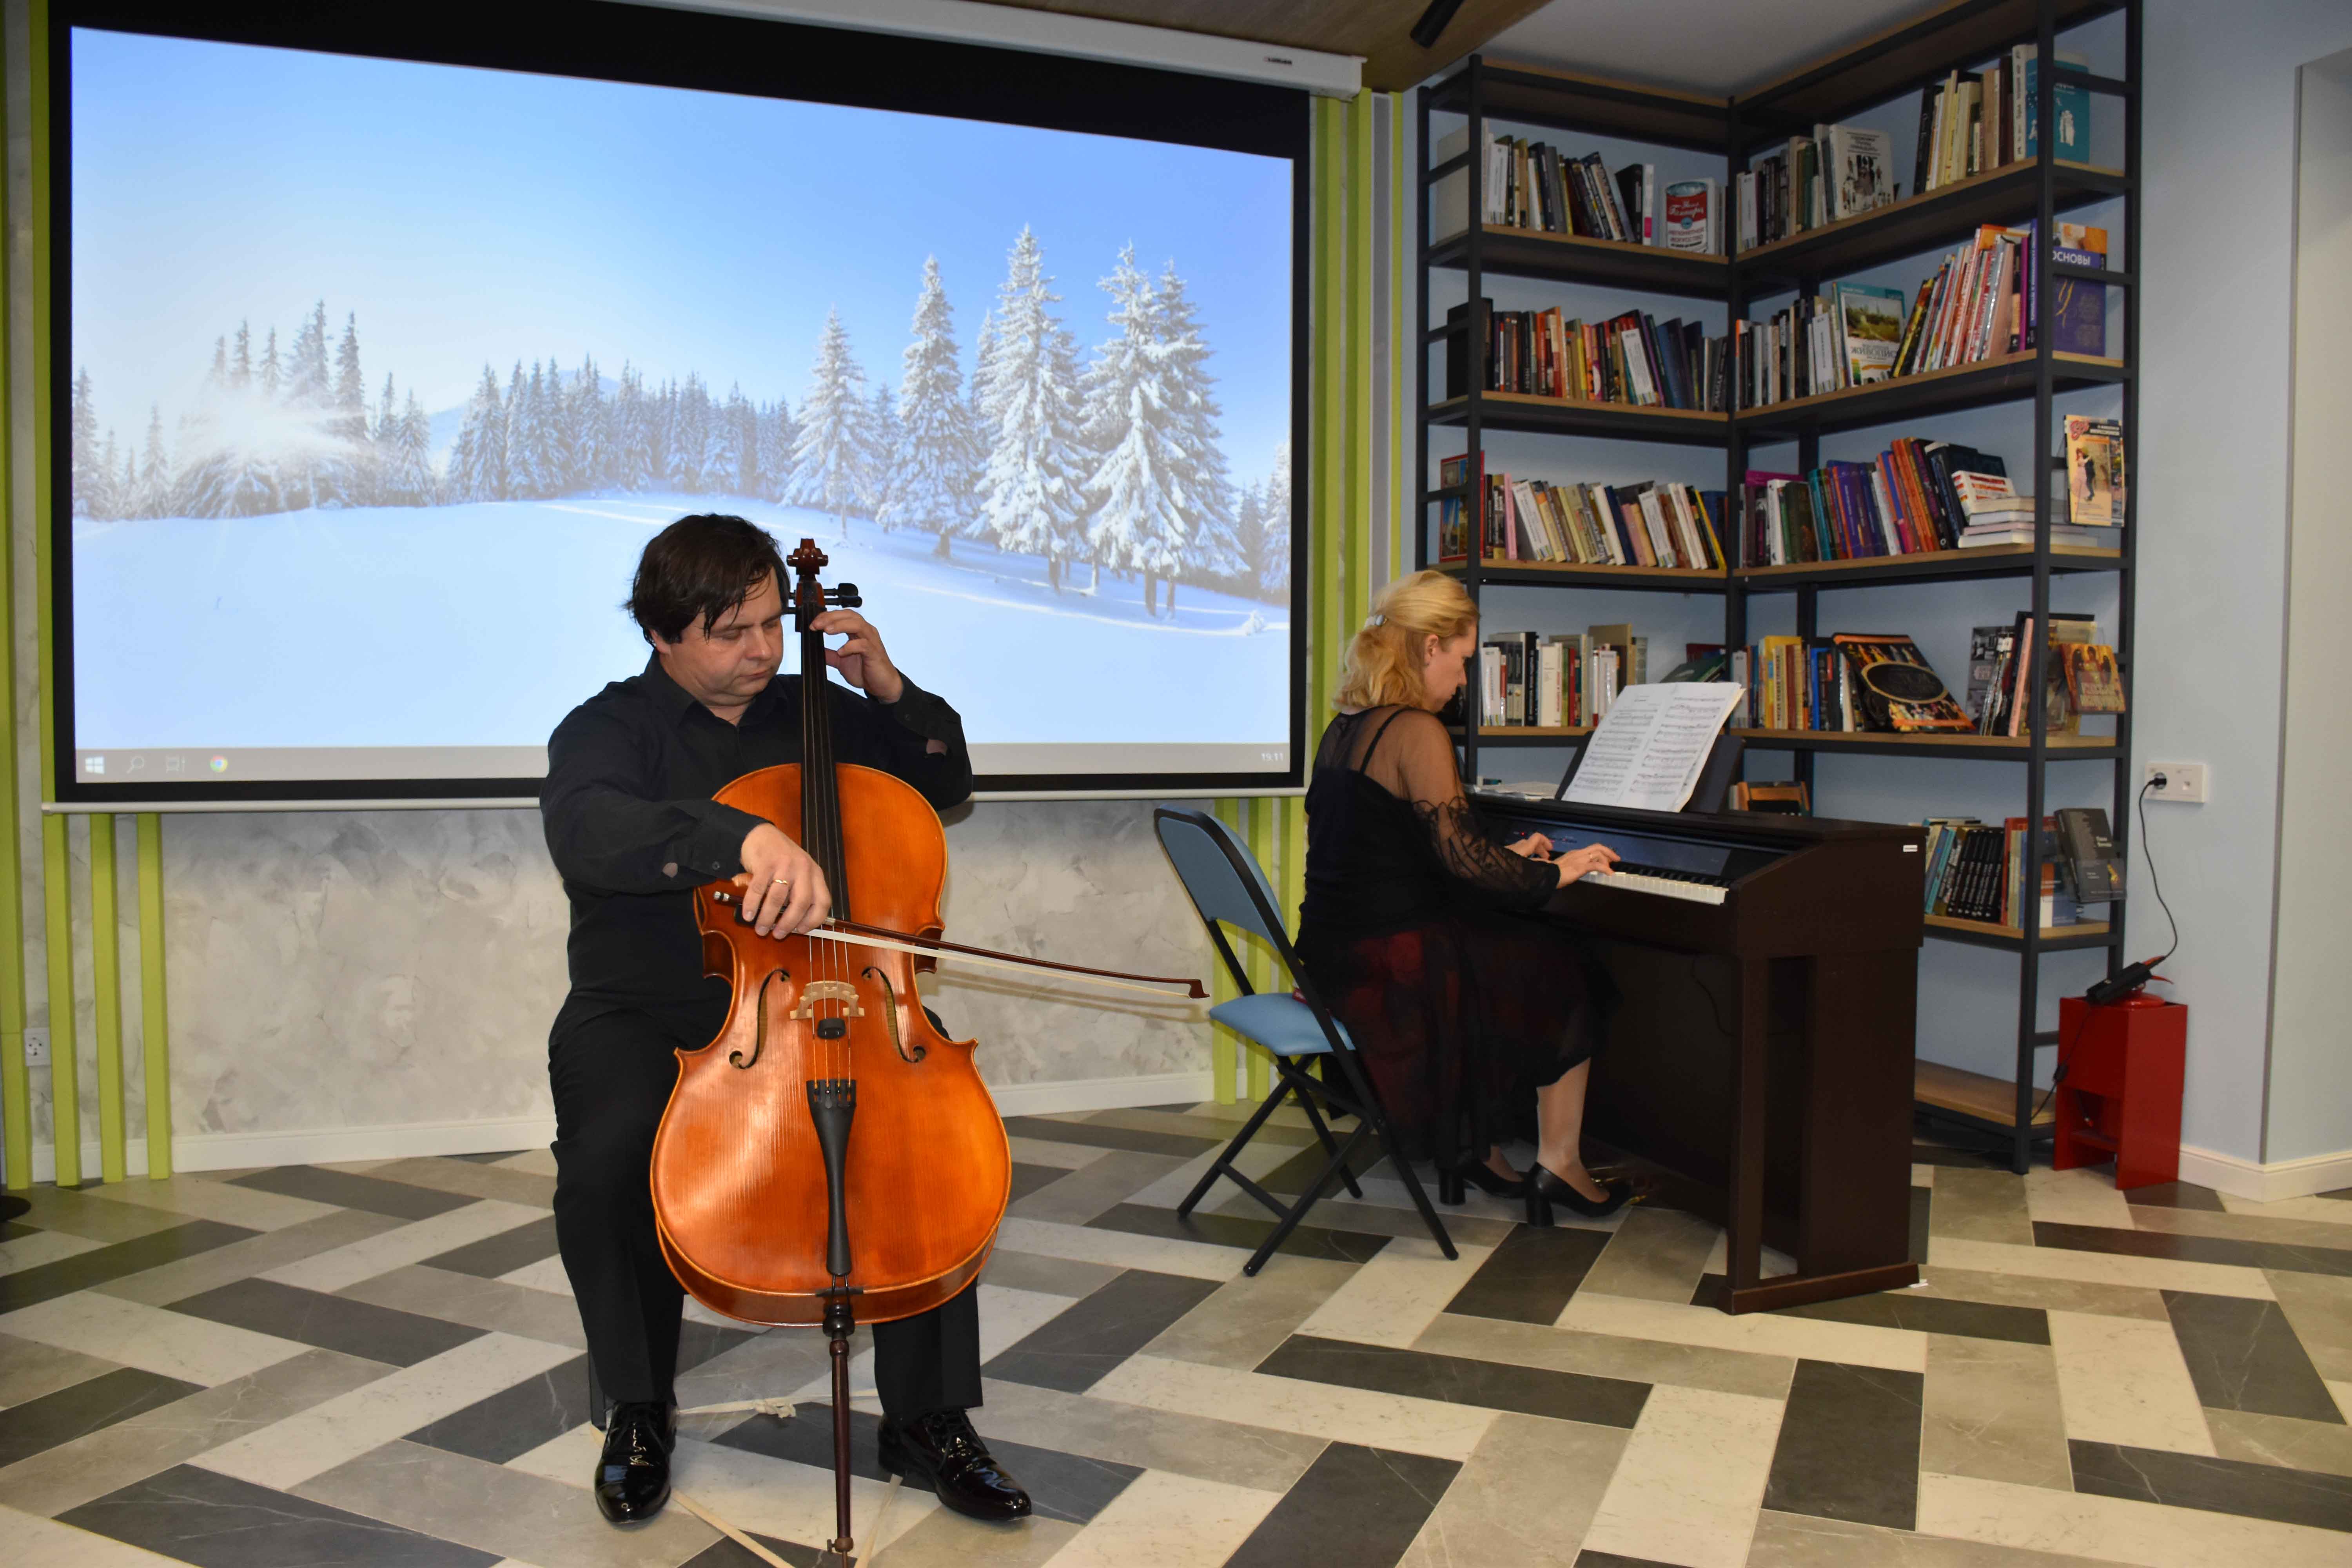 Знакомые и любимые артисты проекта «Музыкальный салон Петербургская классика» открыли сезон музыкальных вечеров в обновленном библиотечном пространстве